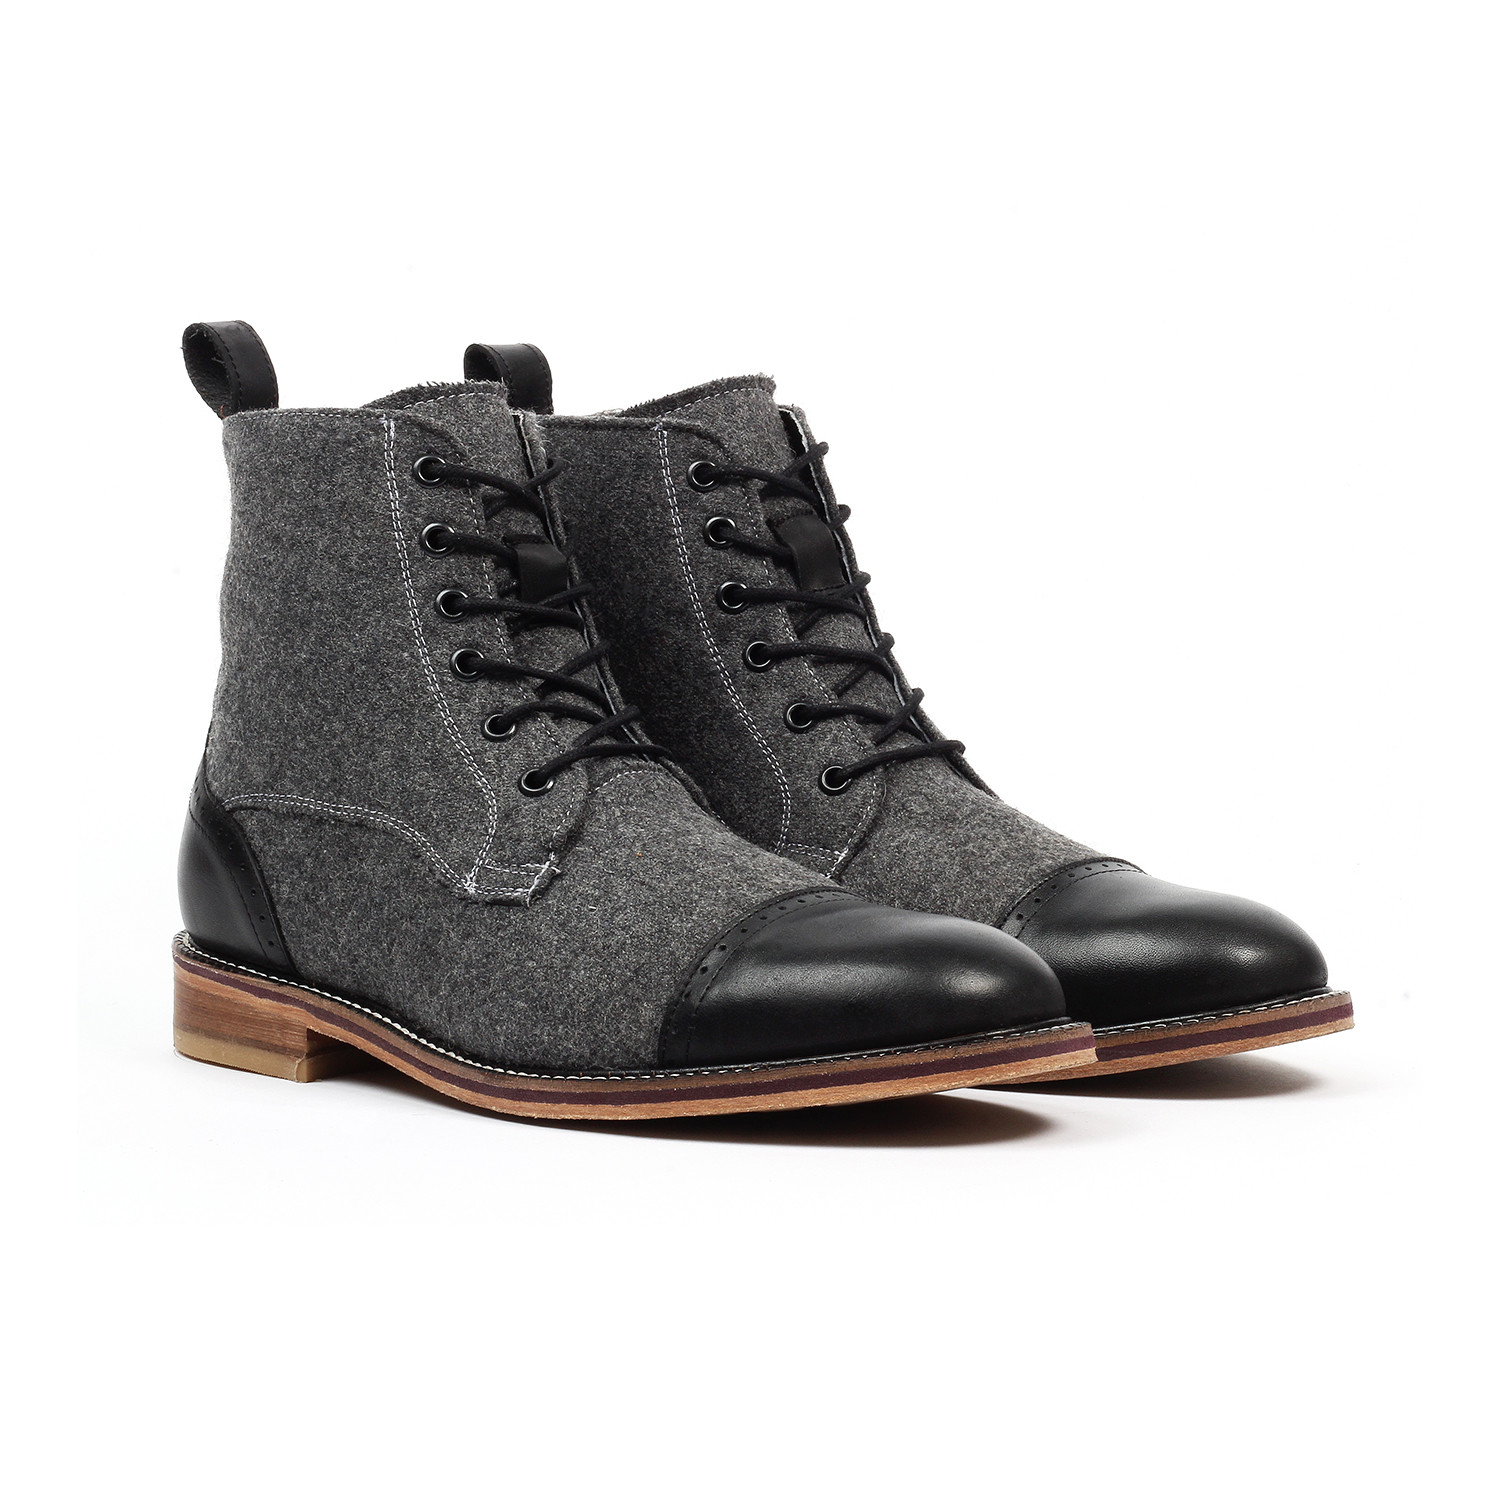 Andre // Men's Cap-Toe Boots // Black 